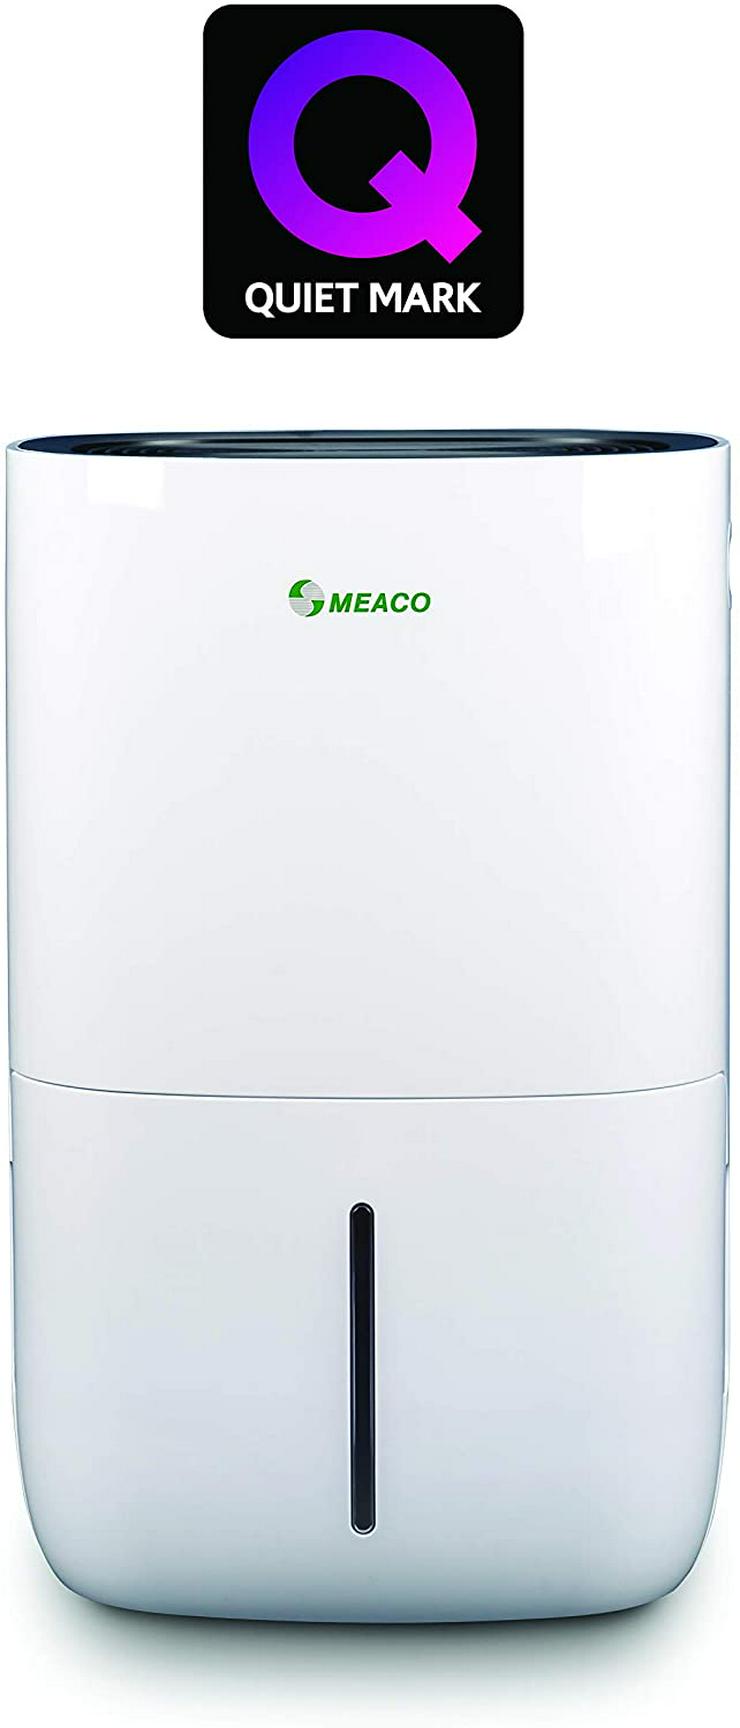  Für größere Ansicht Maus über das Bild ziehen        Meaco MeacoDry 20LB Unser leisester Luftentfeuchter mit großem Kompressor - 25 bis 45 Zoll - Bild 1